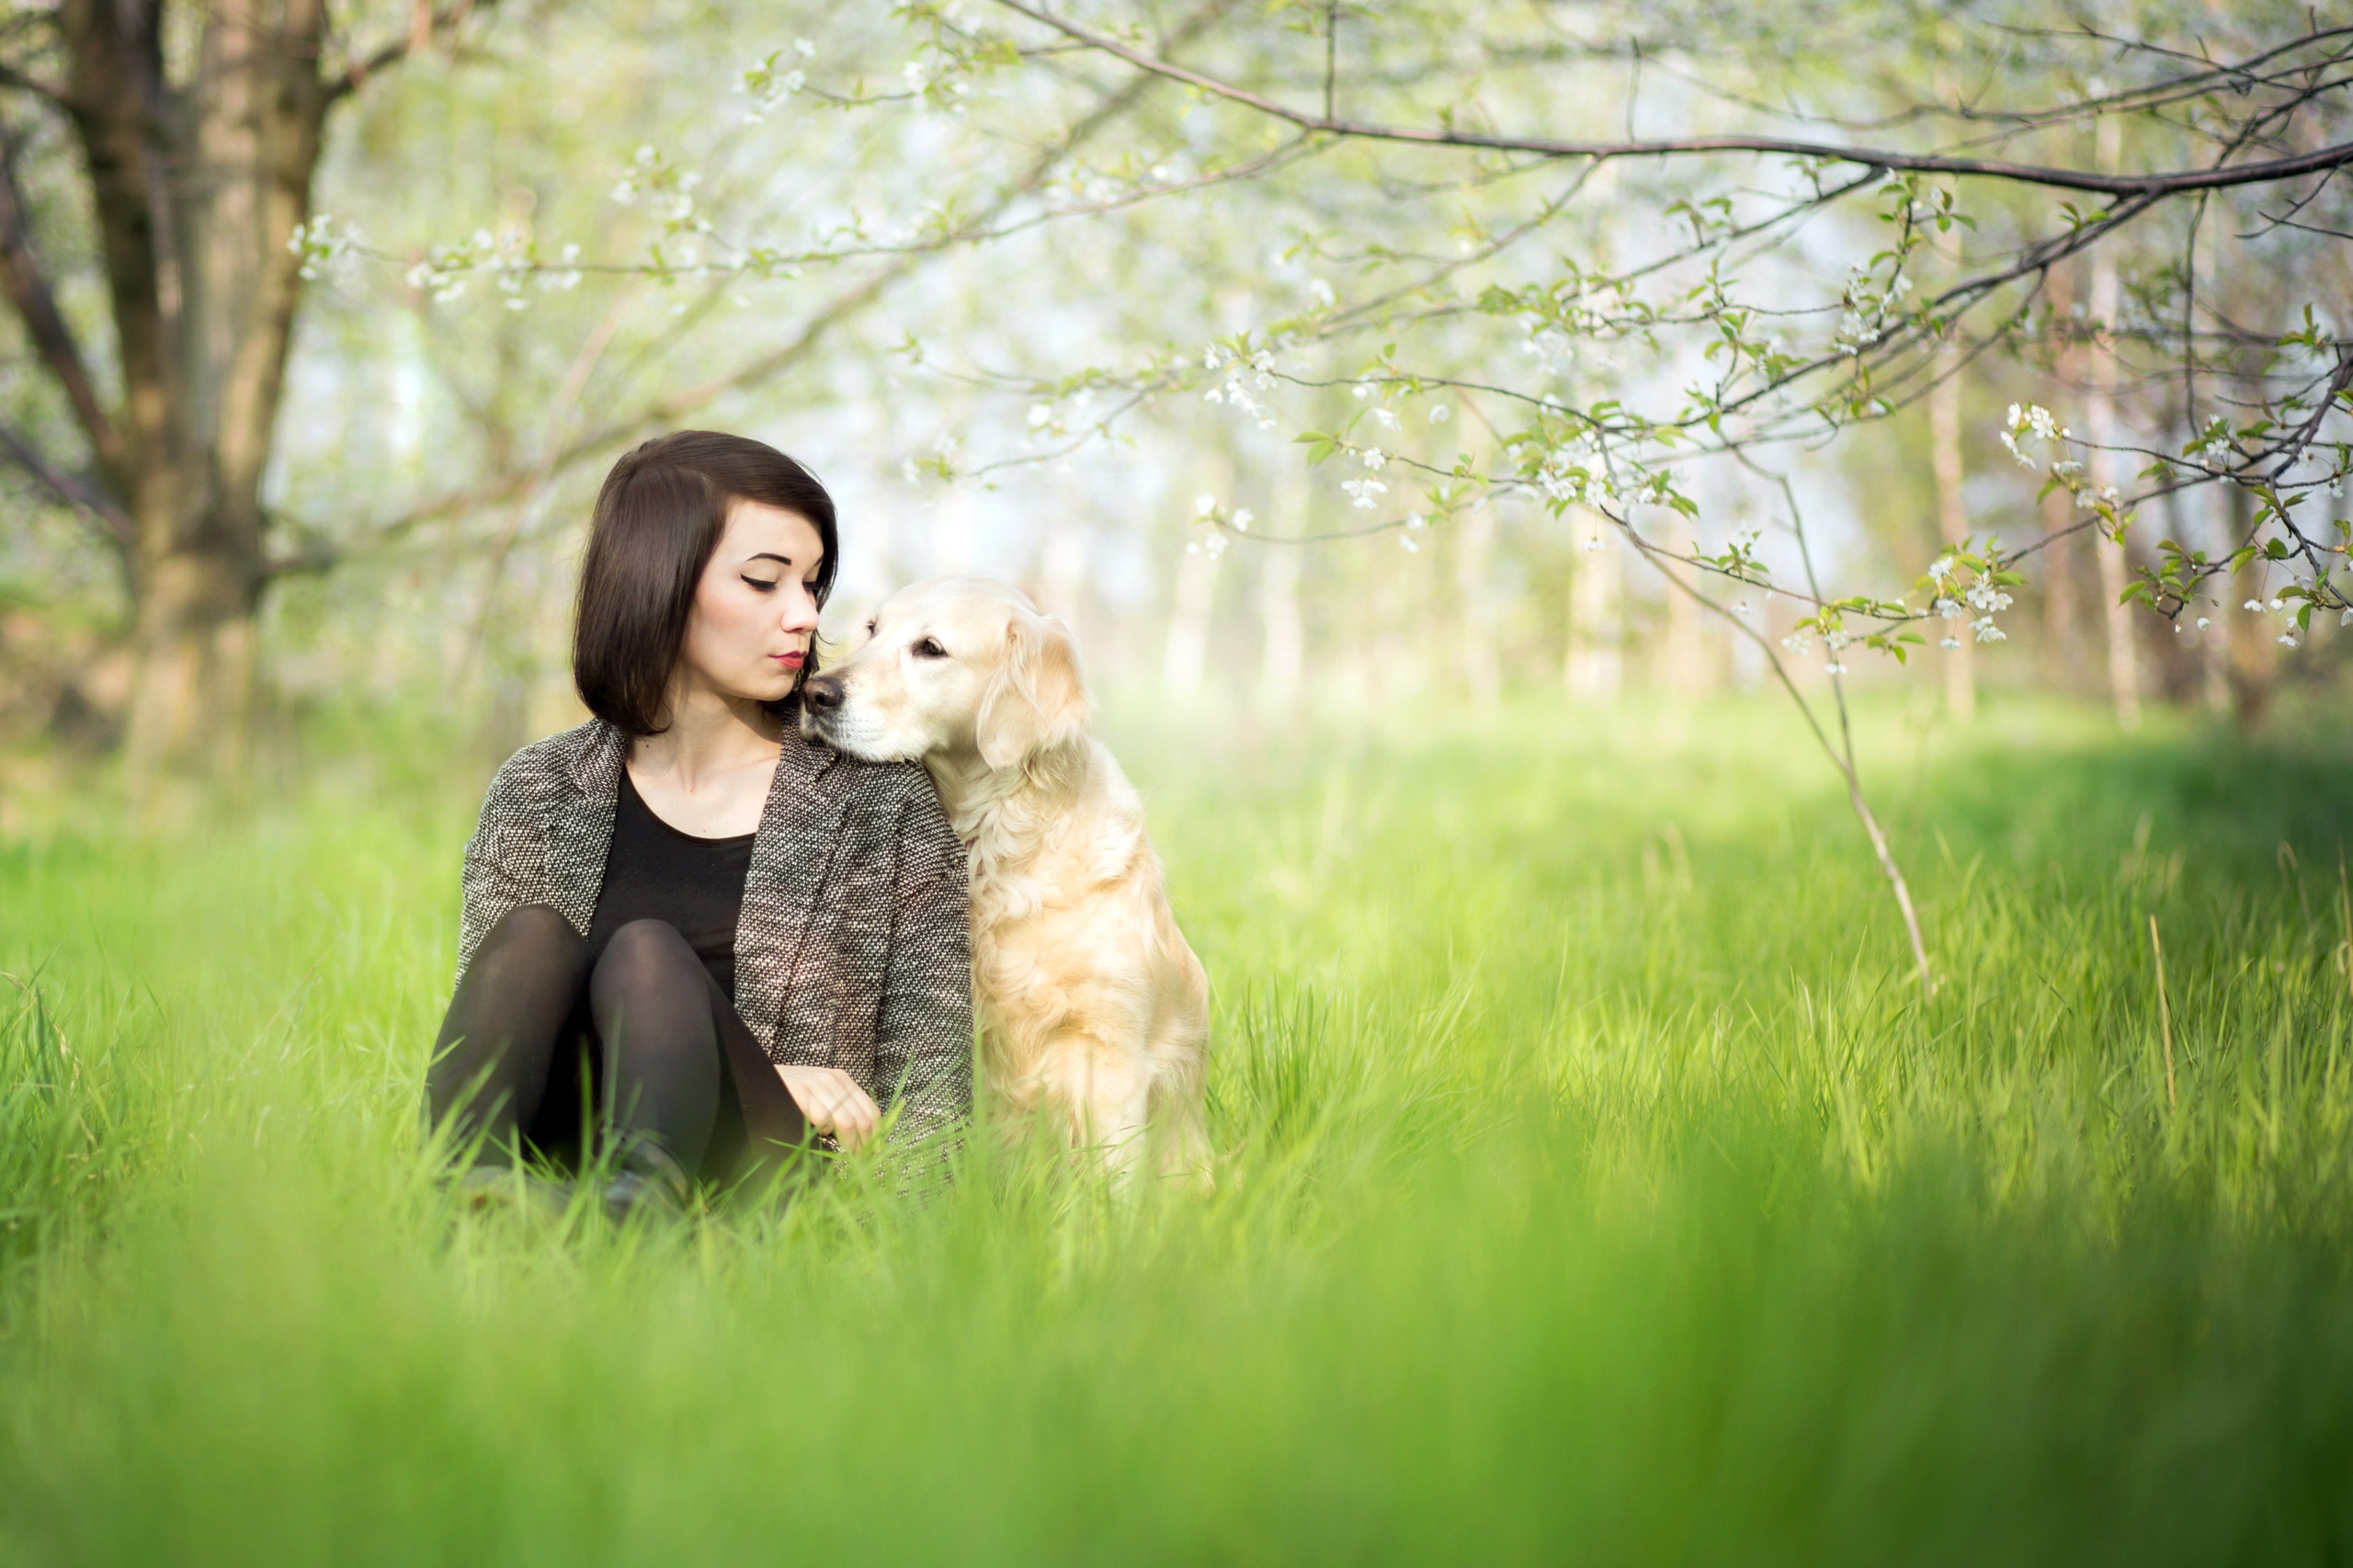 Картинка девушки с собакой. Женщина с собакой. Фотосессия с собакой. Девочка с собакой. Фотосессия с собакой на природе.